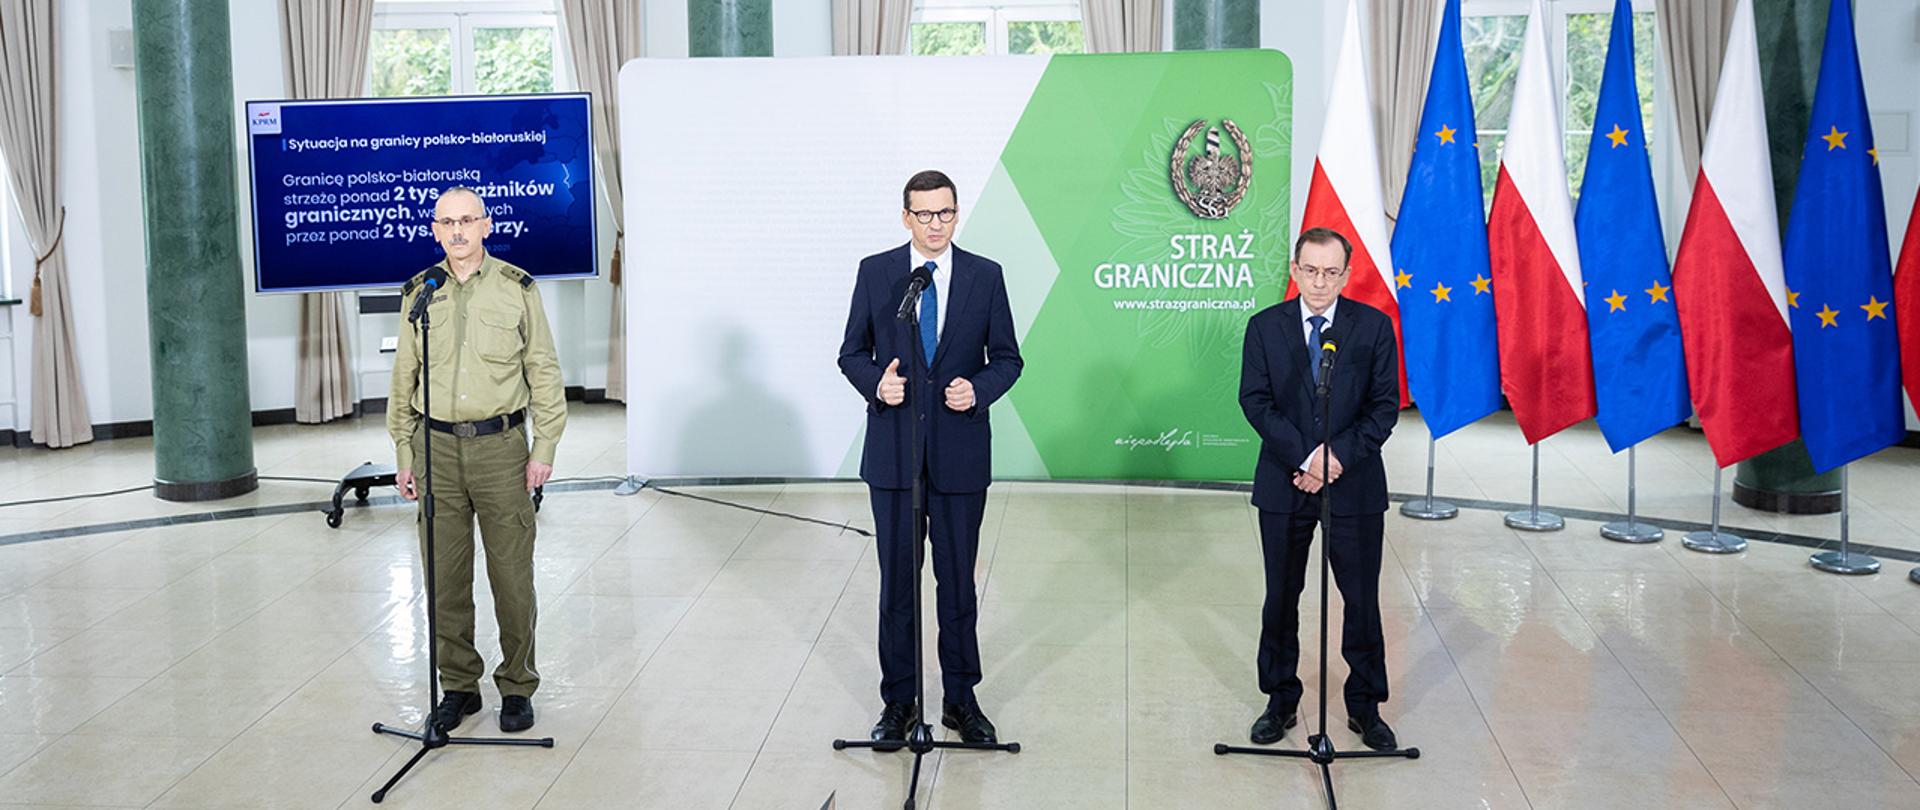 Na zdjęciu widać premiera Mateusza Morawieckiego, ministra Mariusza Kamińskiego i komendanta głównego Straży Granicznej gen. Tomasza Pragę.